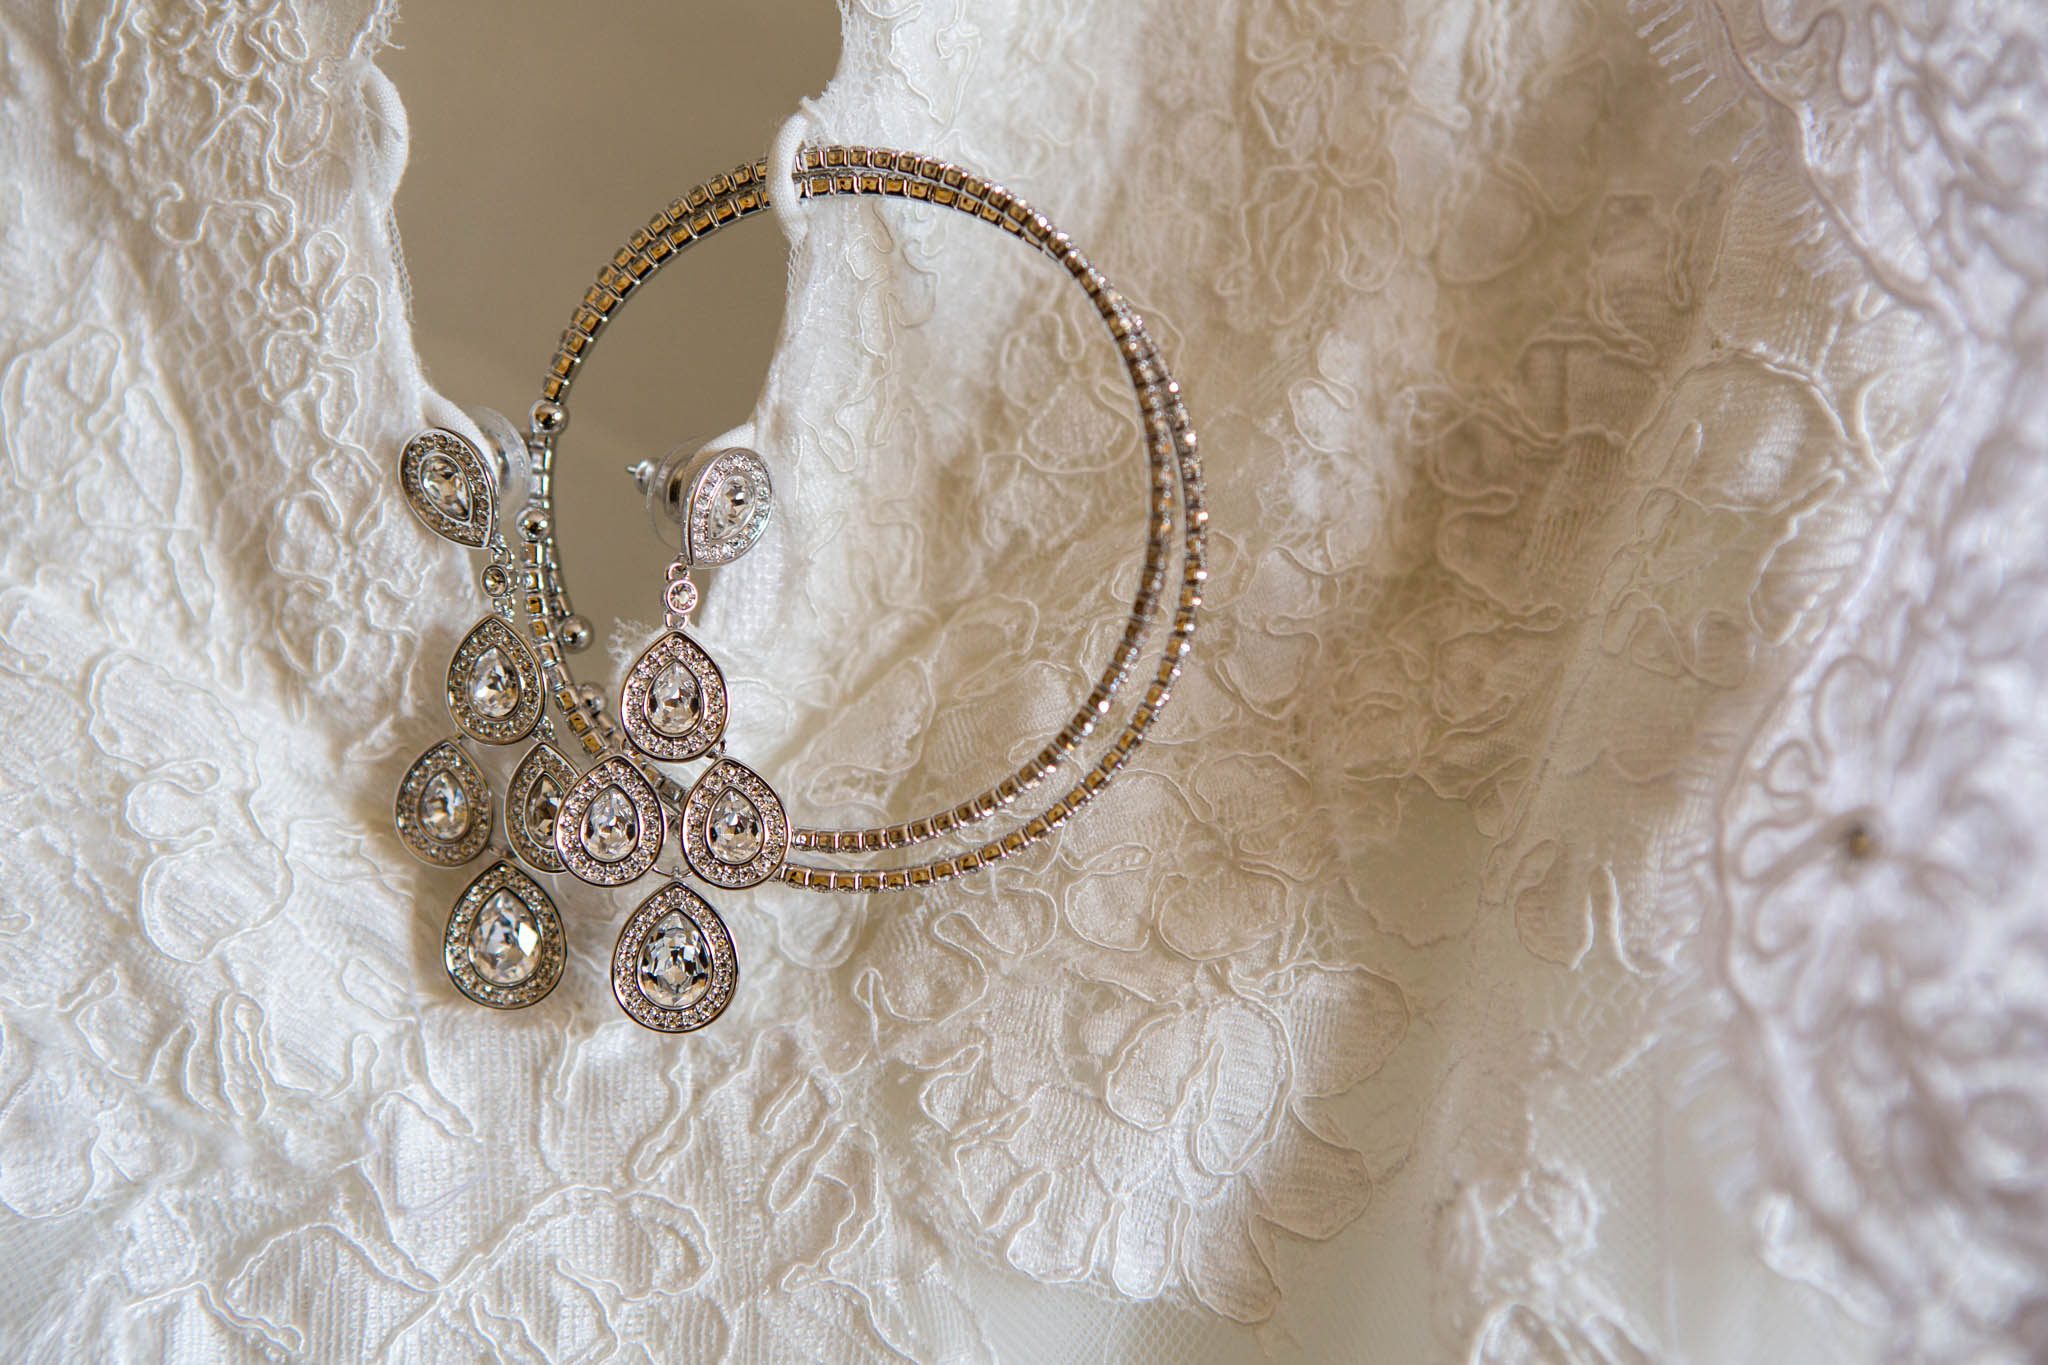 bride's dress detail, lace, earrings, bracelet